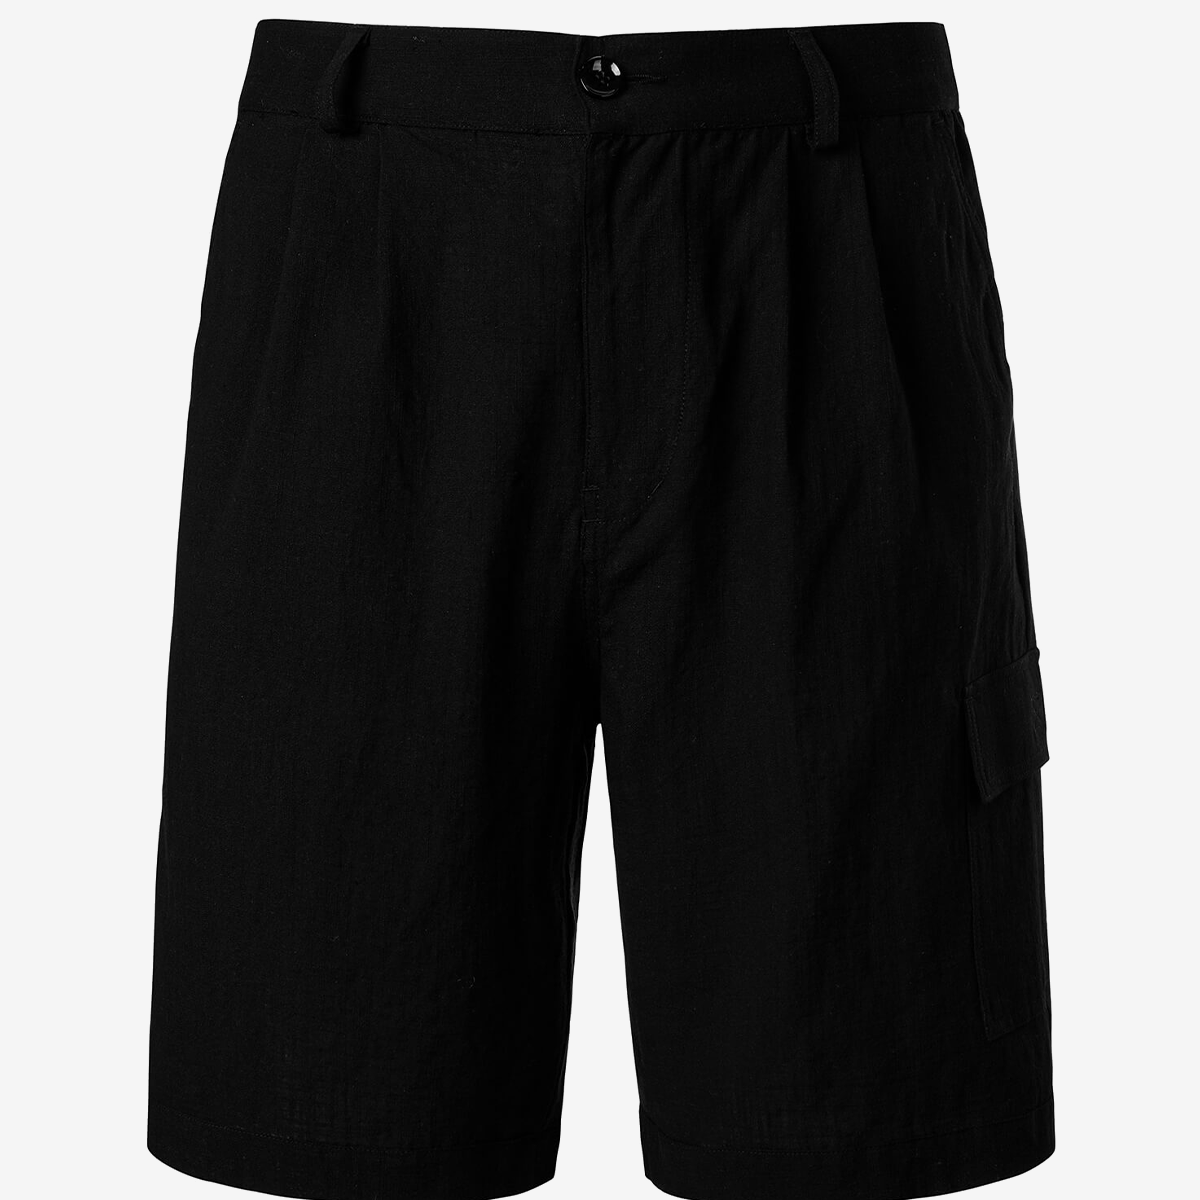 Men's Cotton Linen Casual Summer Beach Shorts